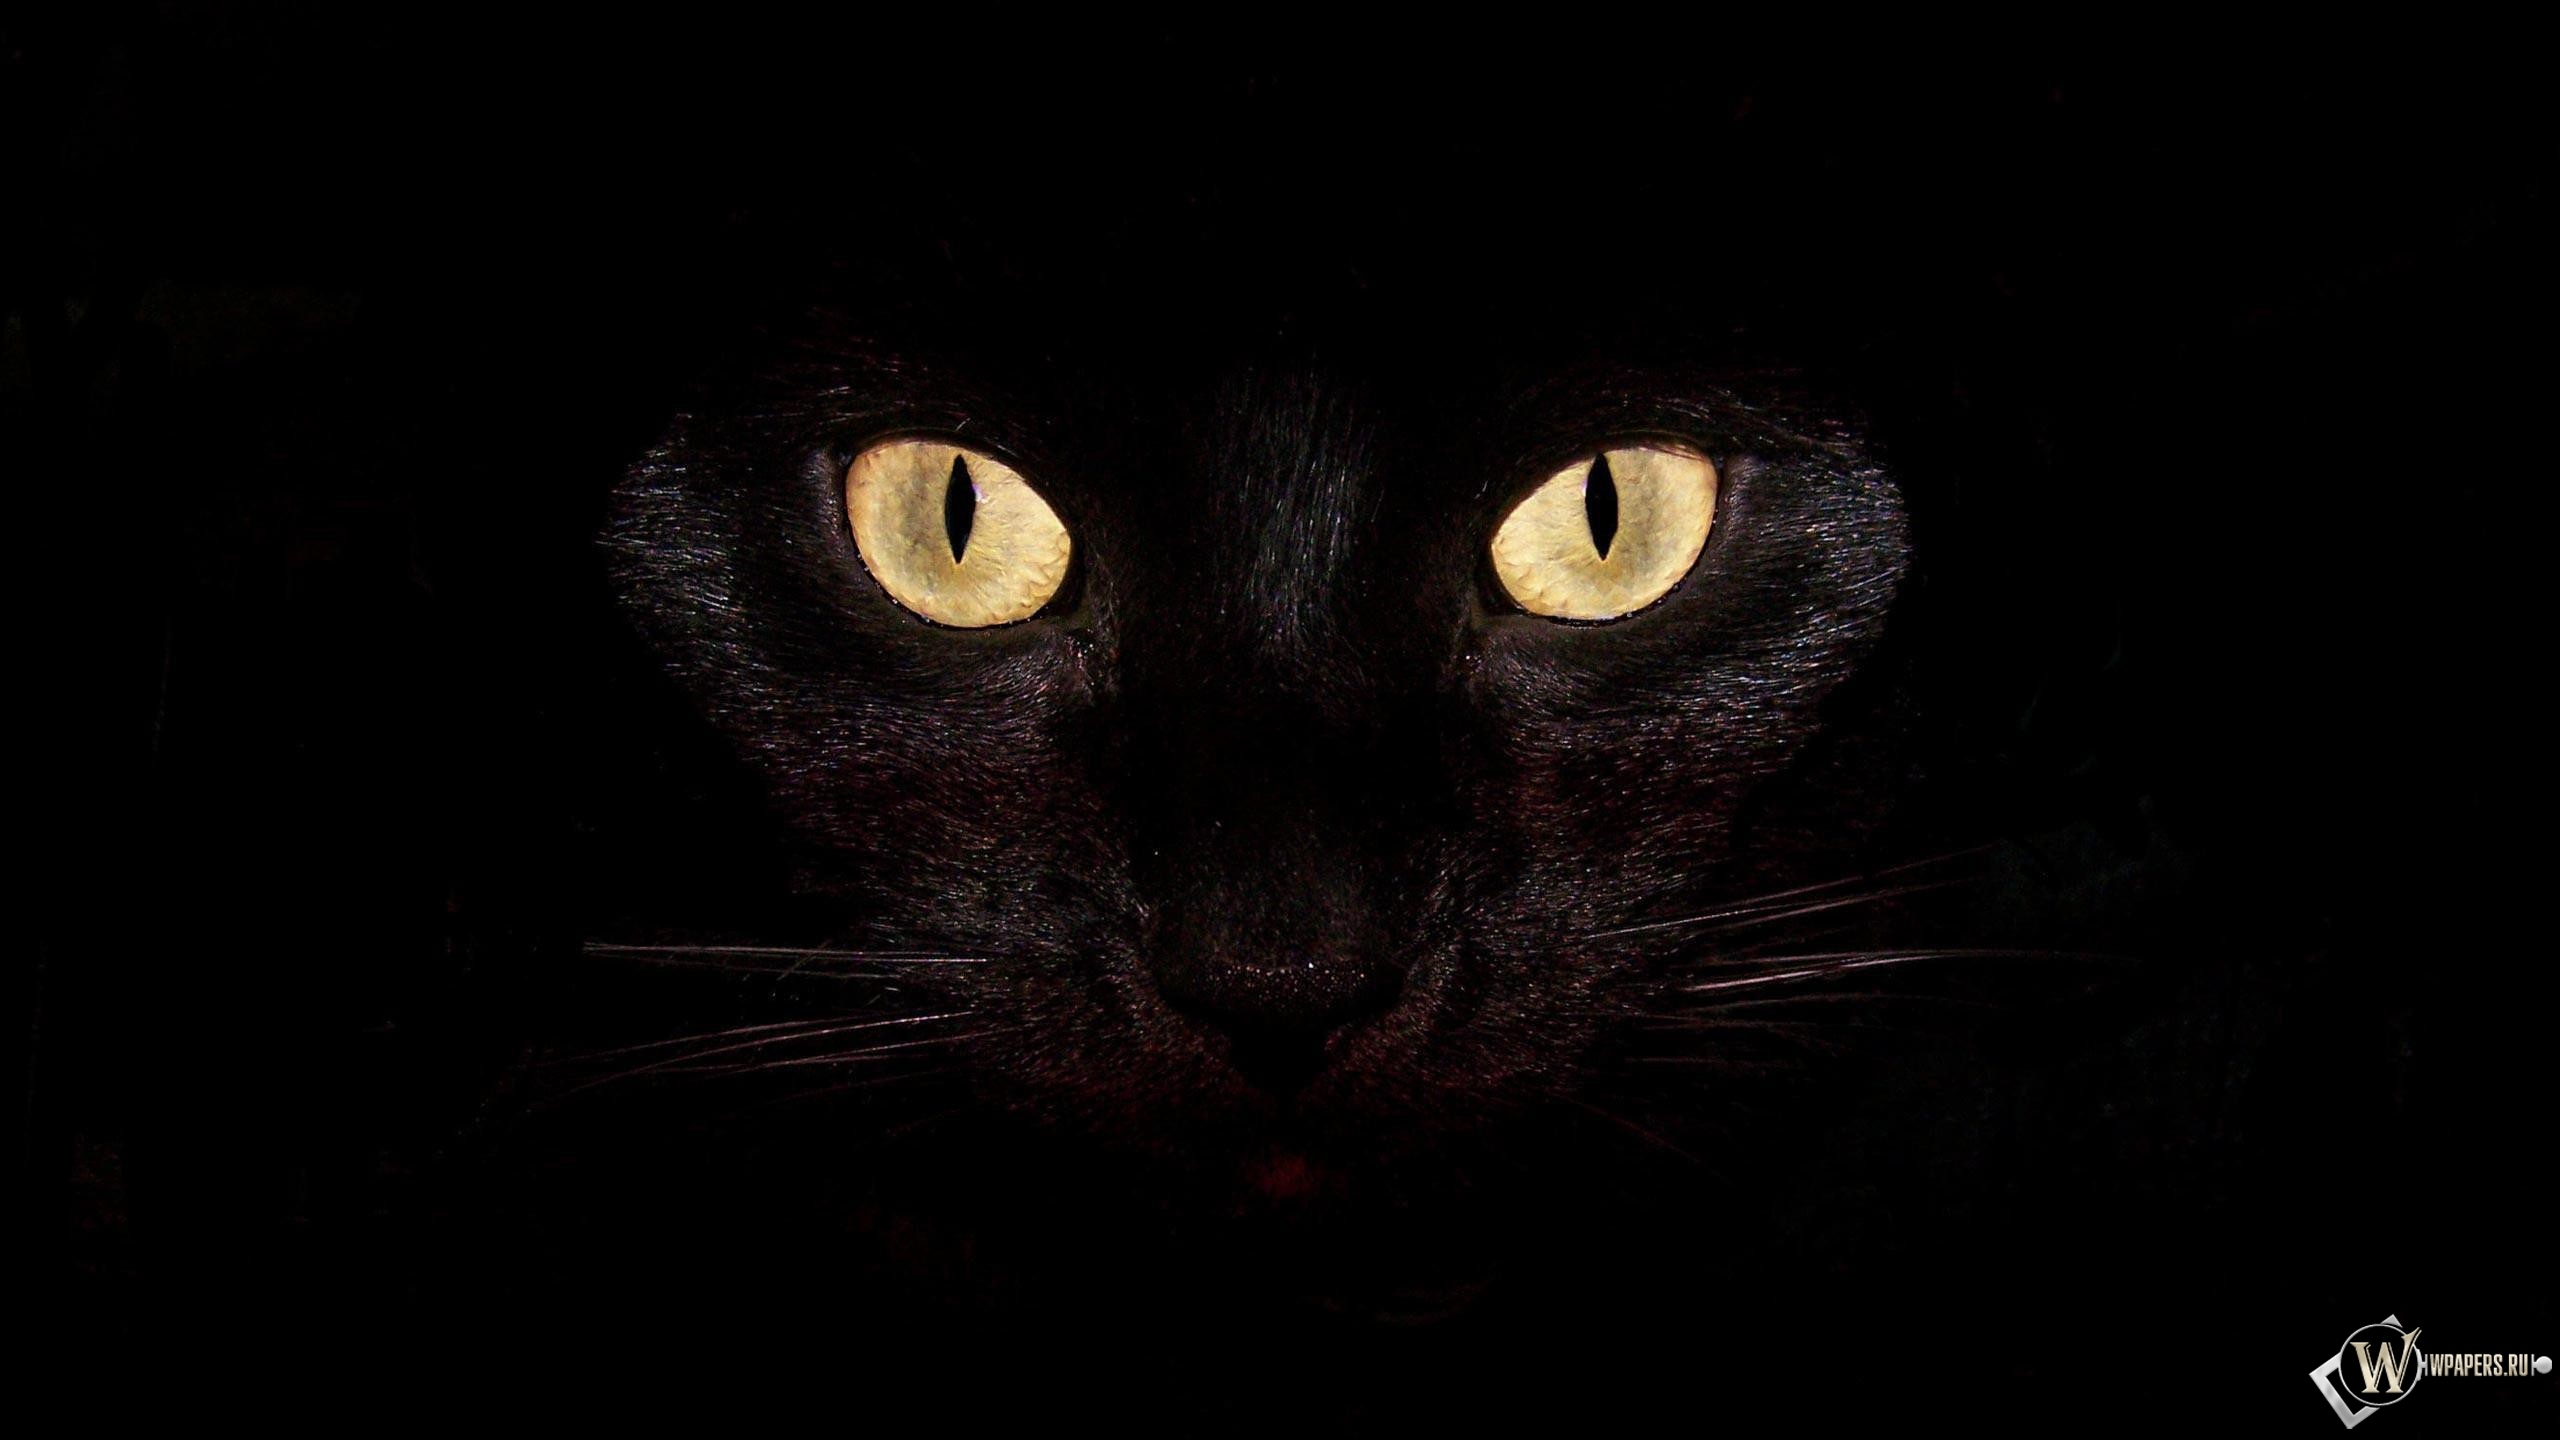 Черная кошка на чернофм фоне 2560x1440